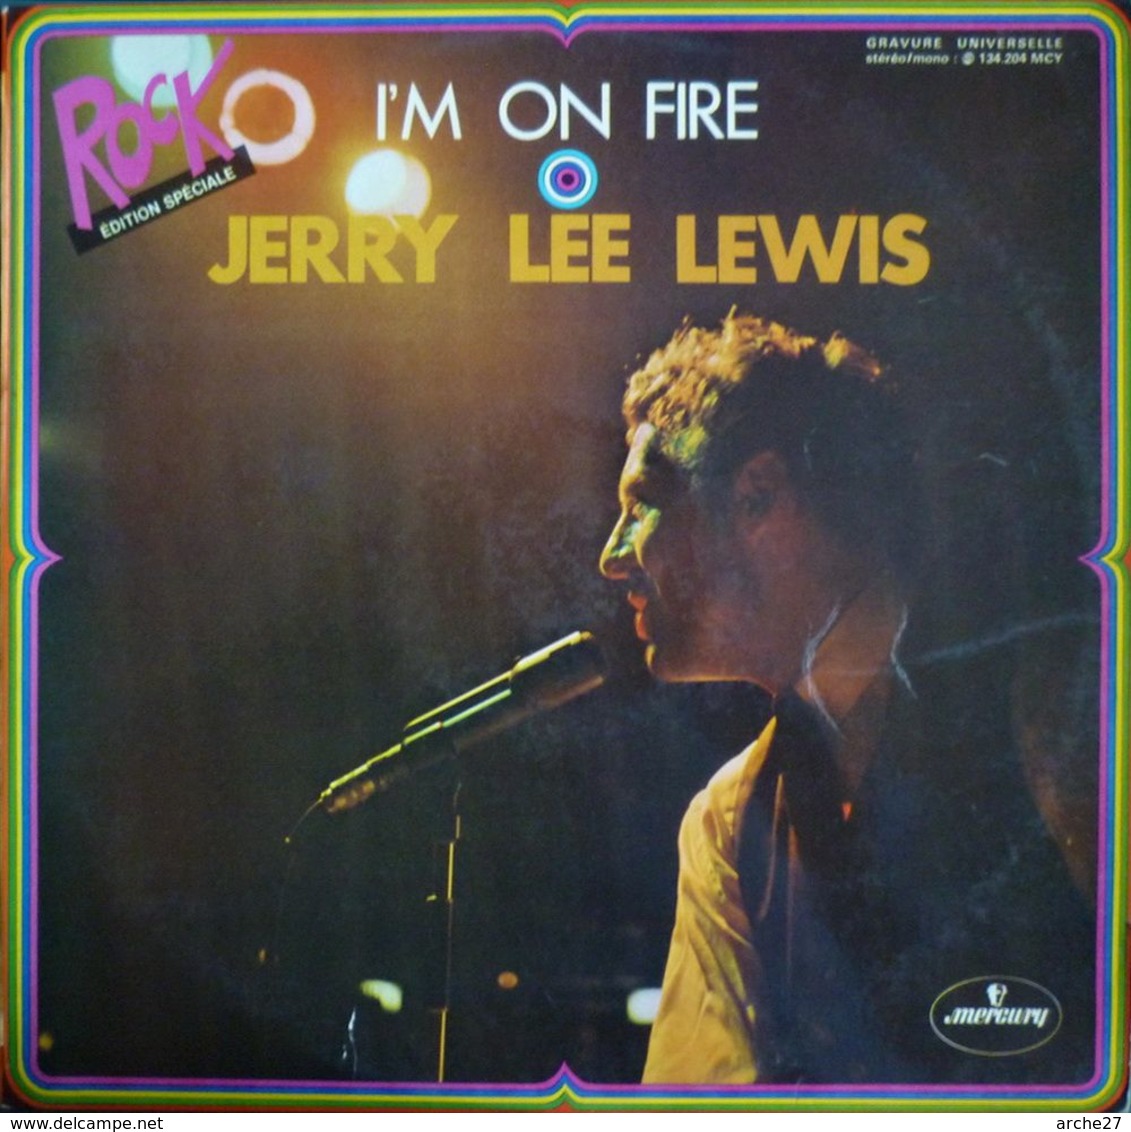 JERRY LEE LEWIS - LP - 33T - Disque Vinyle - I'm On Fire - 134204 - Rock